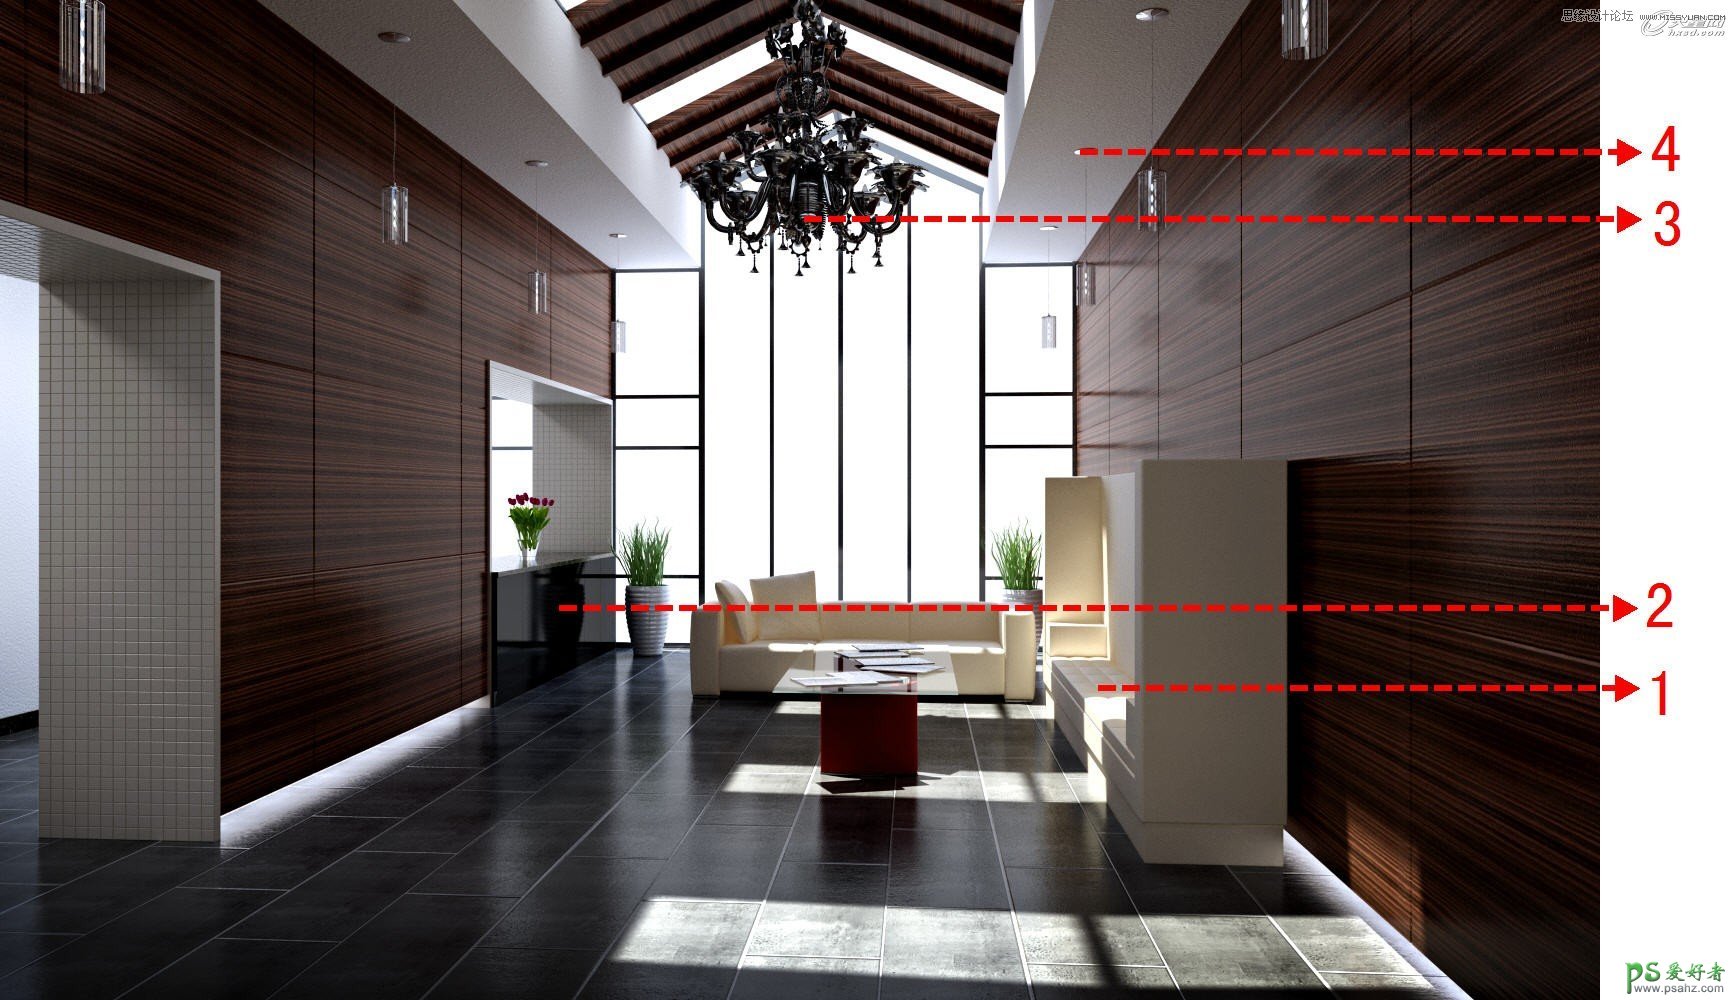 3ds Max装修效果图制作教程：打造逼真的接待厅阳光表现效果图